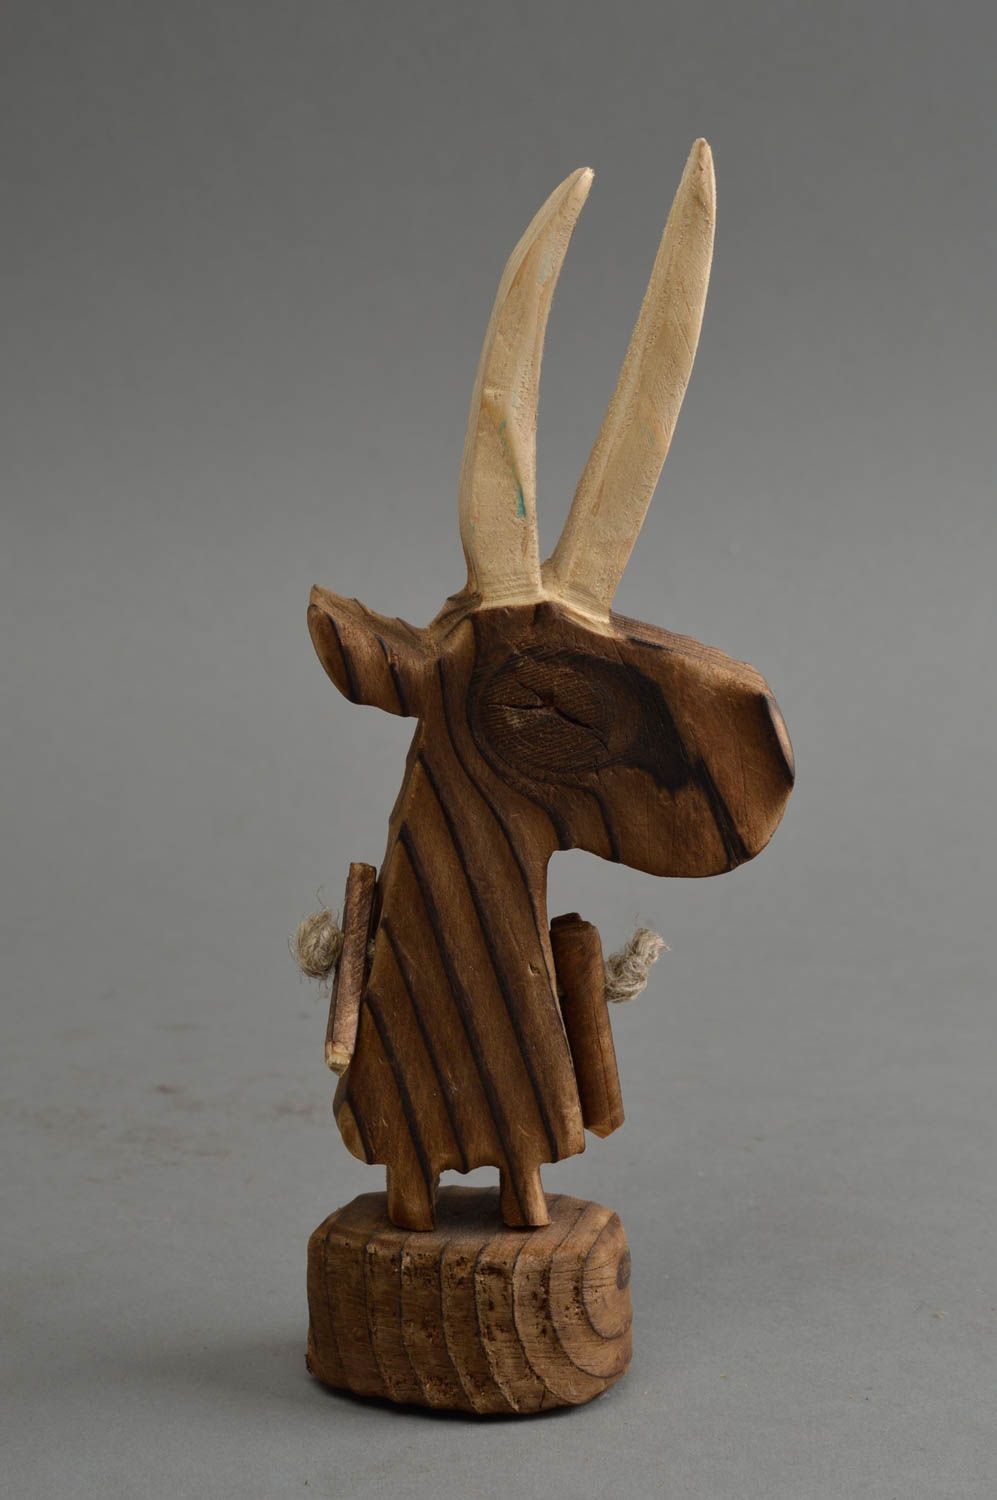 Крохотная статуэтка из дерева в виде козла авторский сувенир или декор фото 2